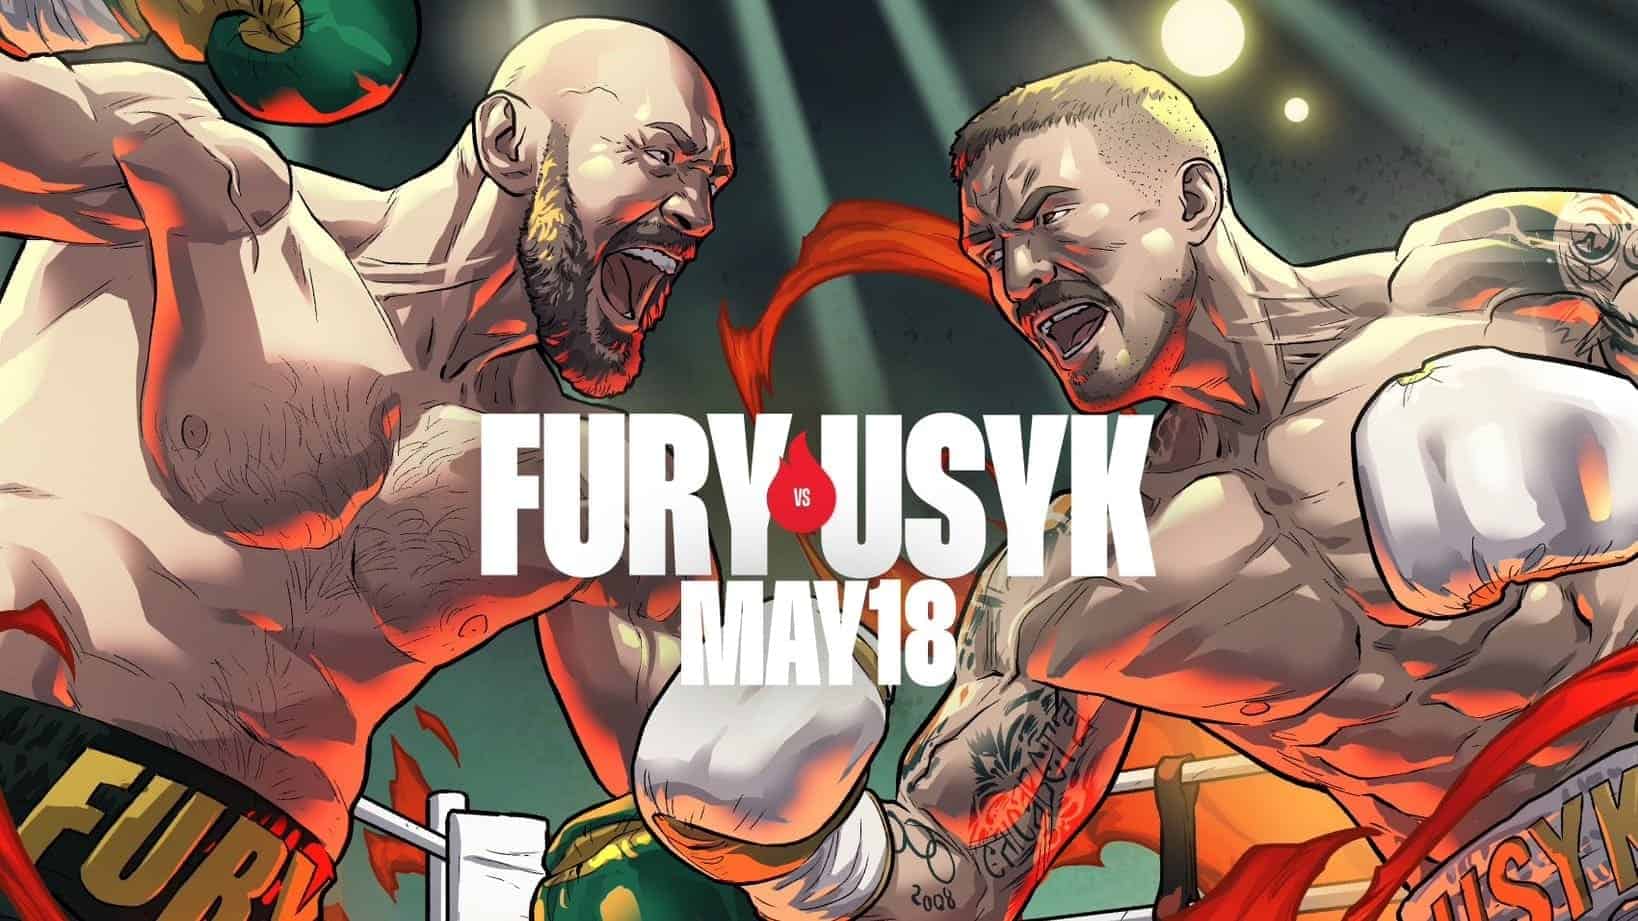 Fury vs Usyk poster Riyadh Season